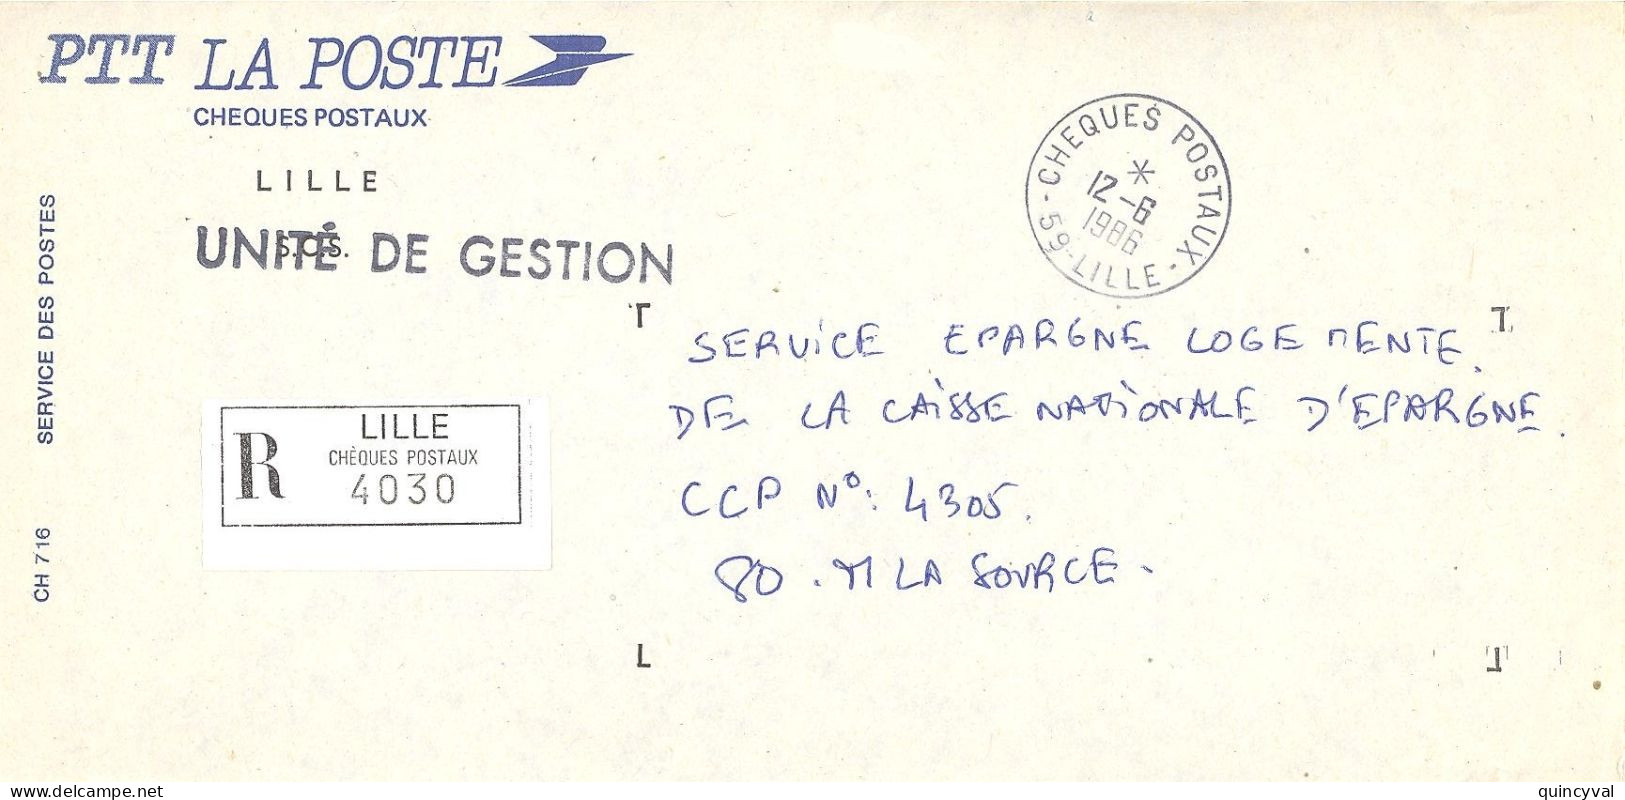 CHEQUES POSTAUX  59 LILLE Ob 12 6 1986 Lettre Enveloppe CCP Chèques Postaux RECOMMANDE UNITE De GESTION - Cachets Manuels